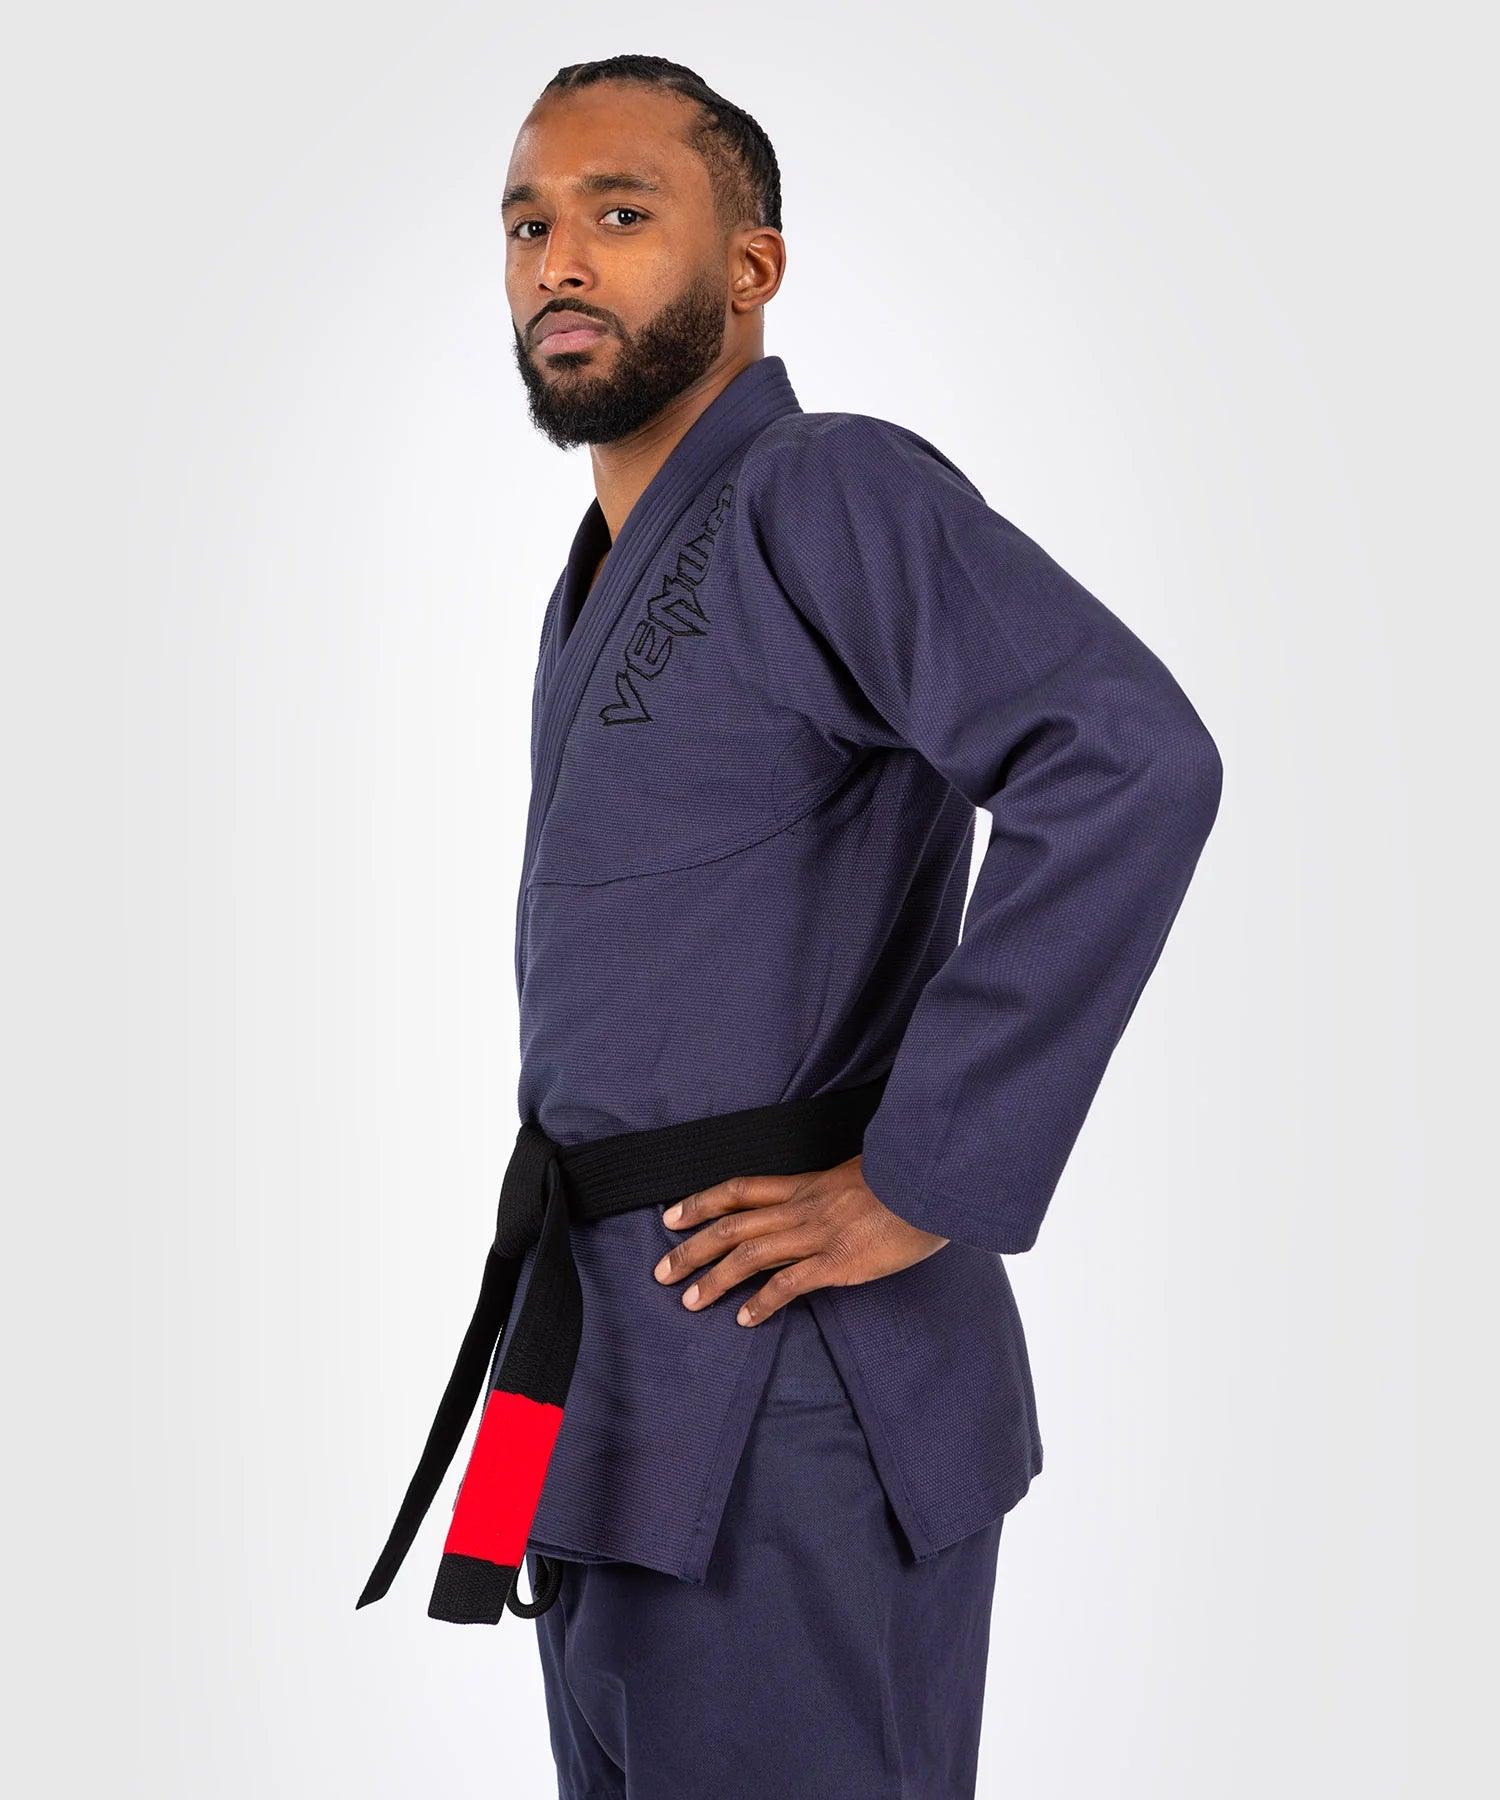 Kimono Jiu Jitsu Brésilien Venum Contender - Lavande/Gris